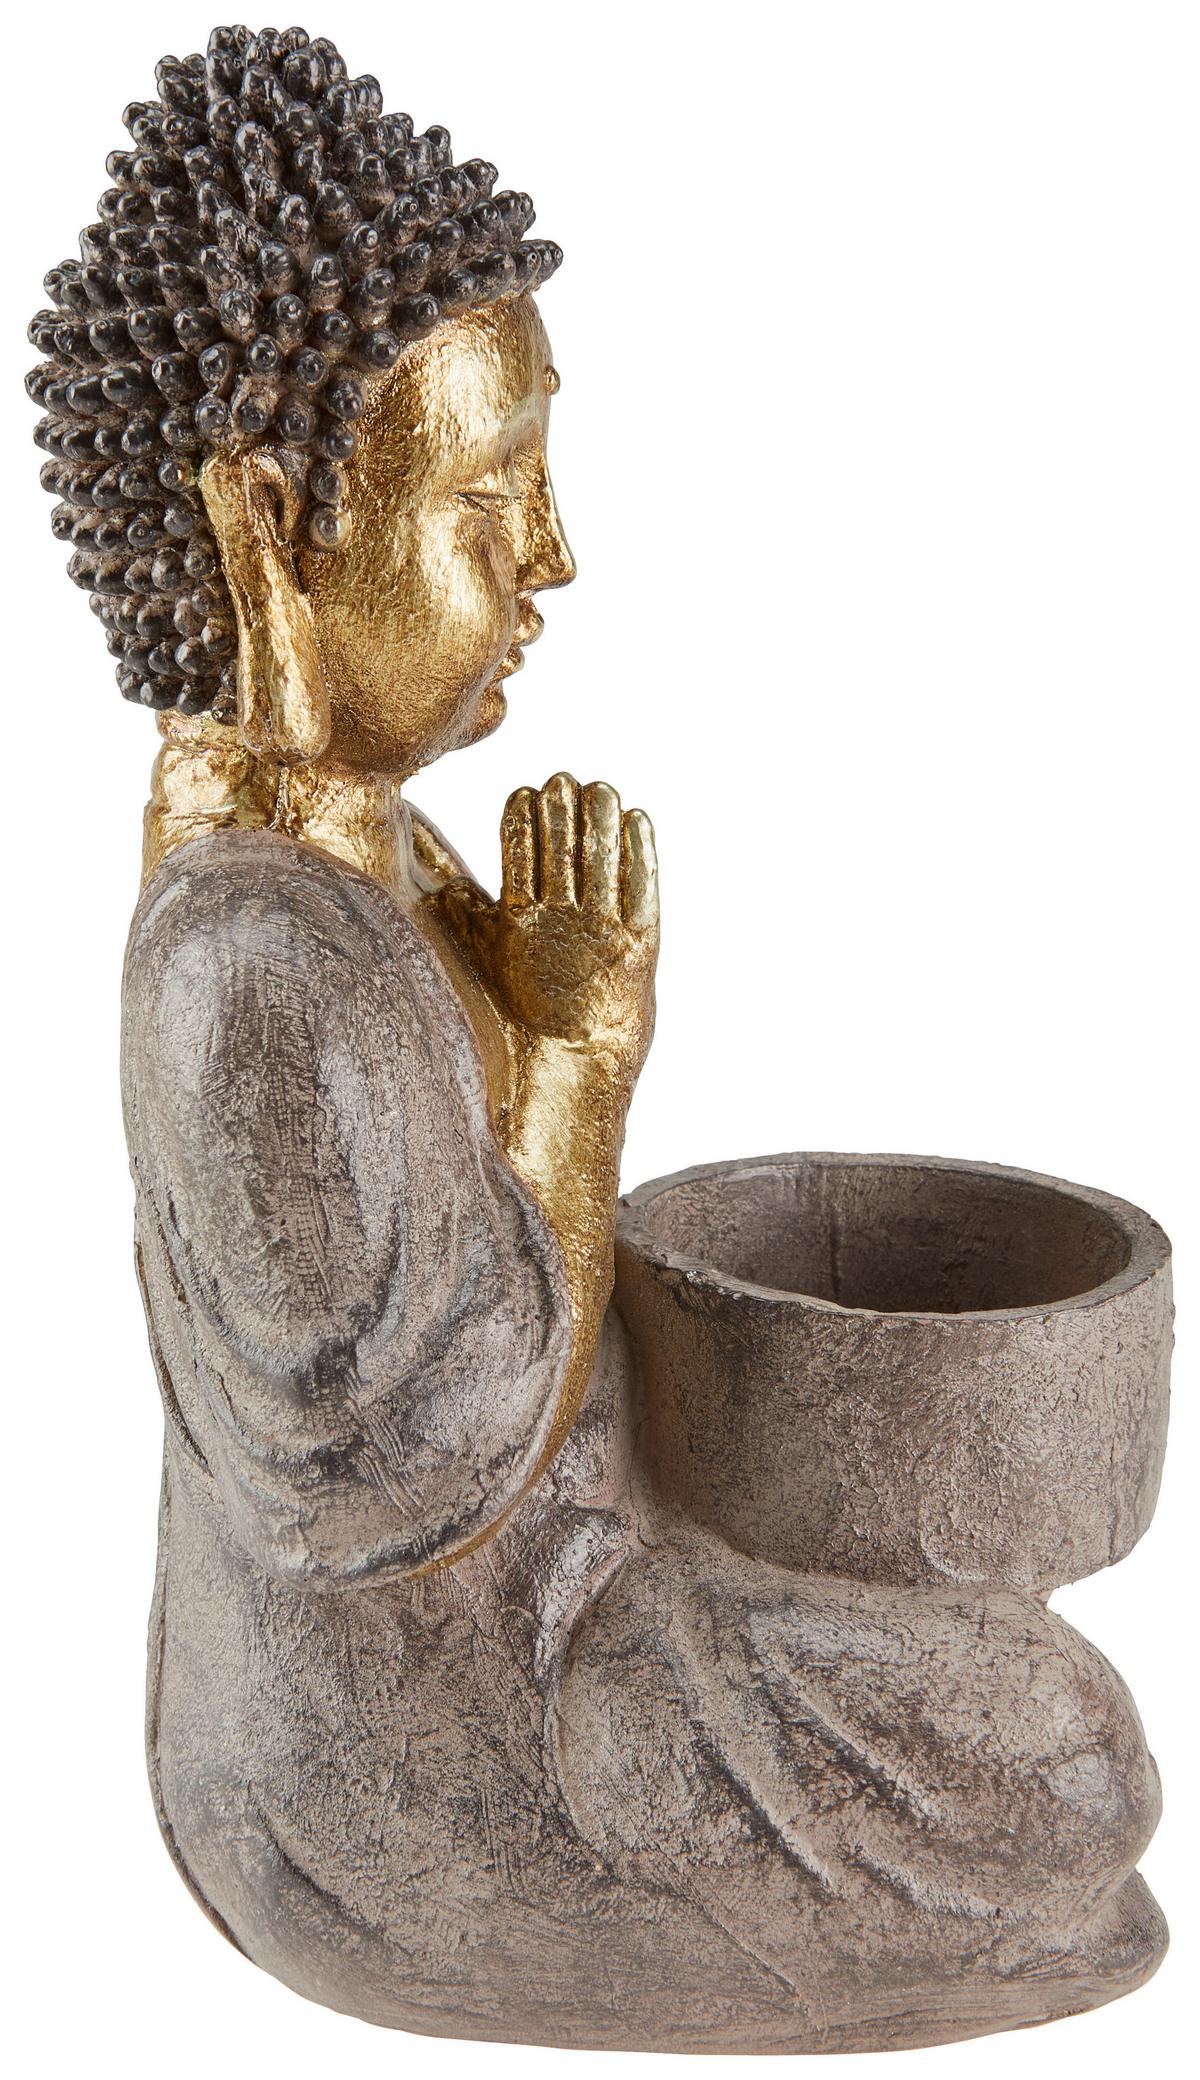 als Teelichthalter braun-goldfarbene Buddha-Figur